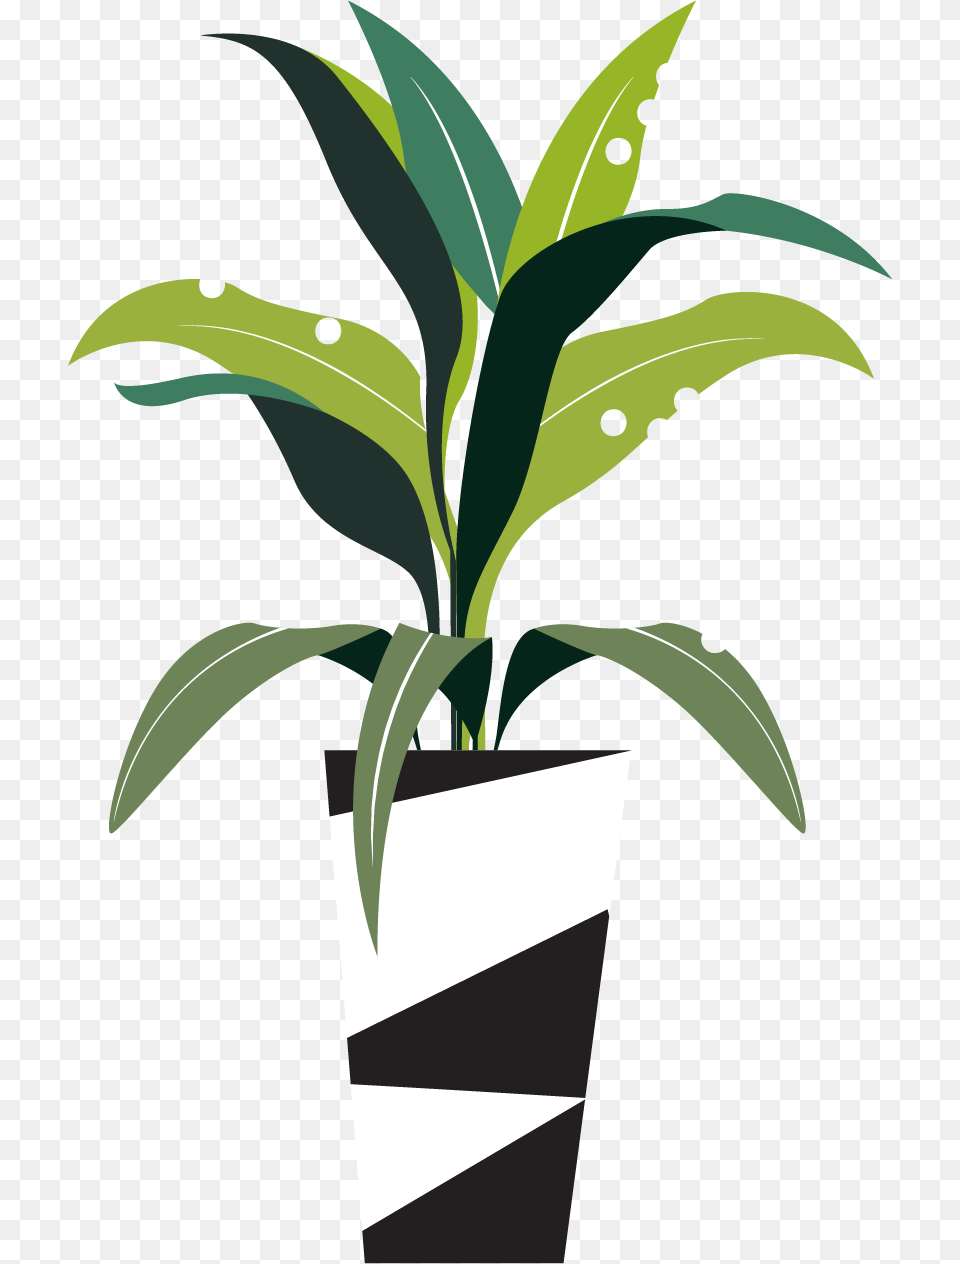 Lego Letter L, Potted Plant, Leaf, Plant, Vase Png Image